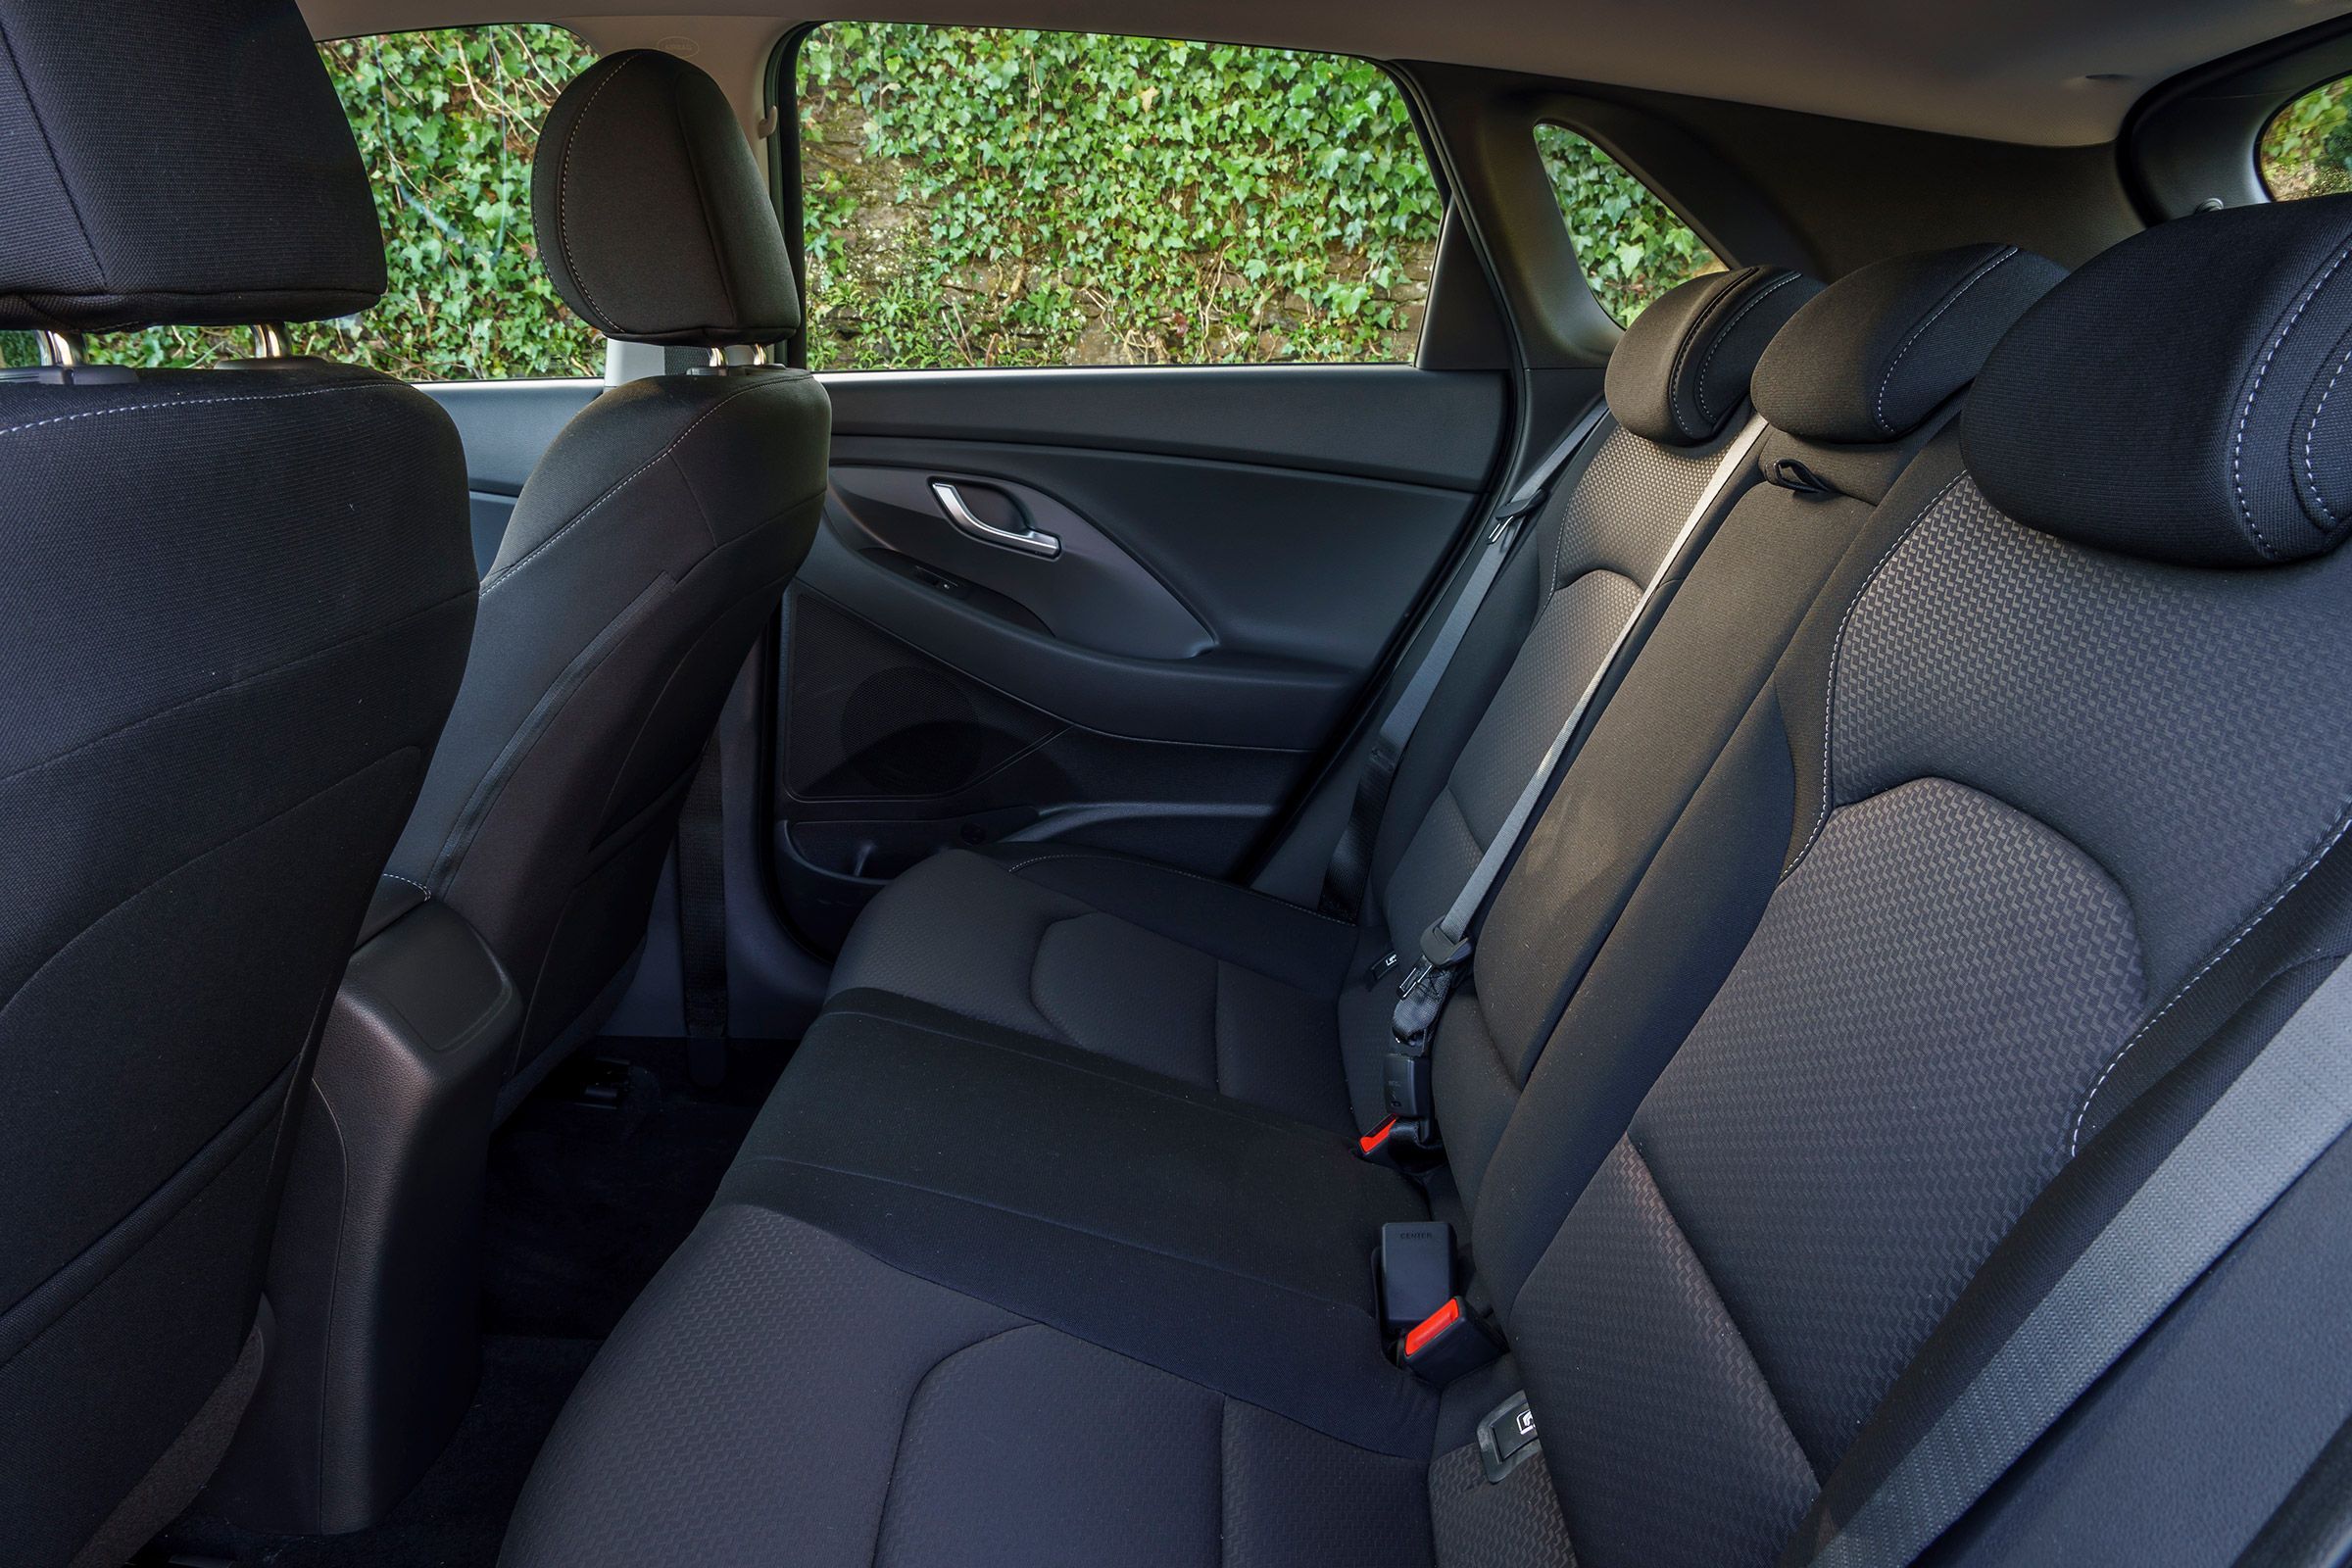 2017 Hyundai I30 Interior Seats Rear (View 15 of 23)